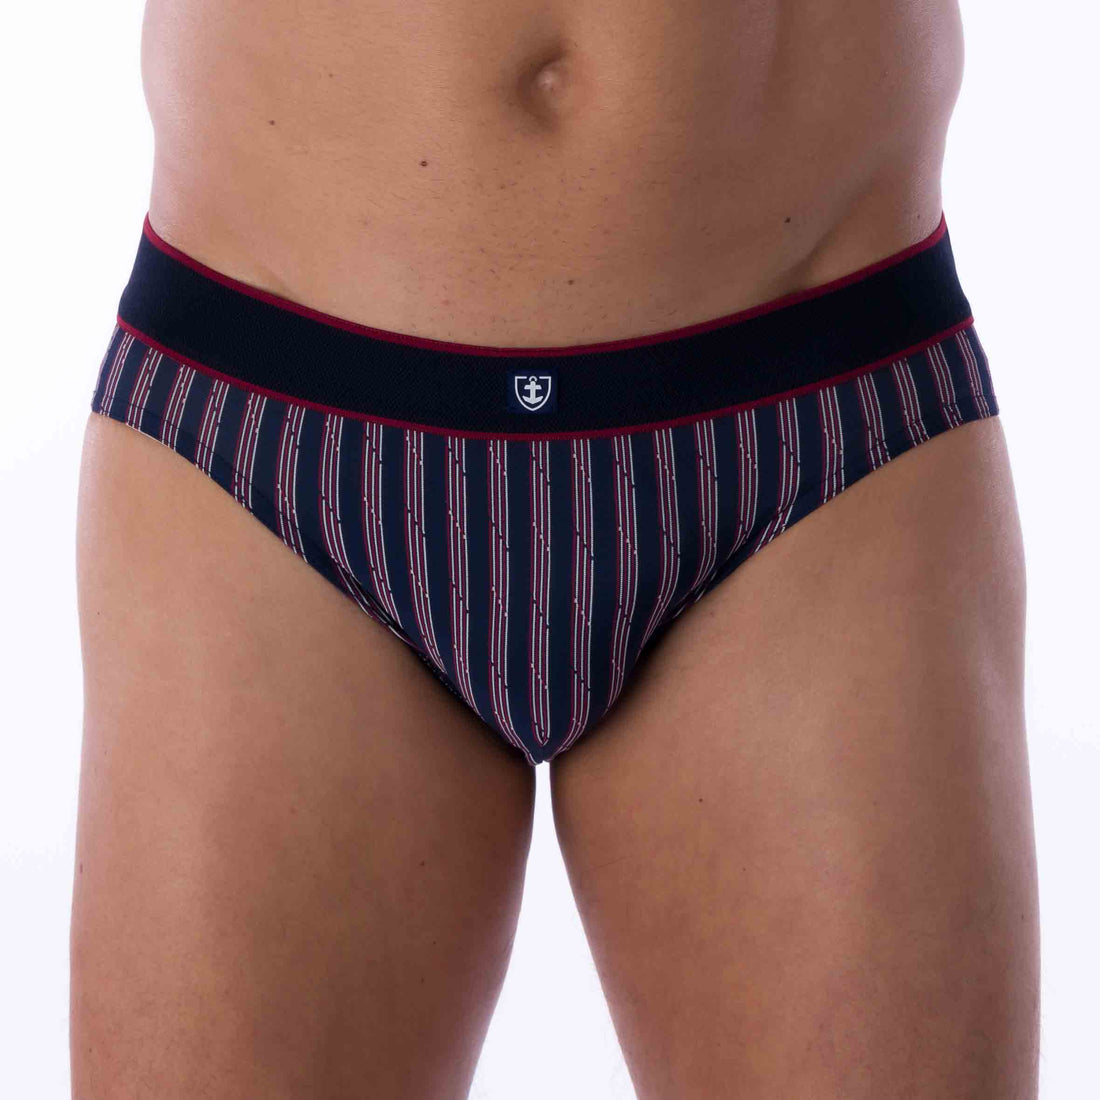 Le Slip Mariner – Mariner underwear